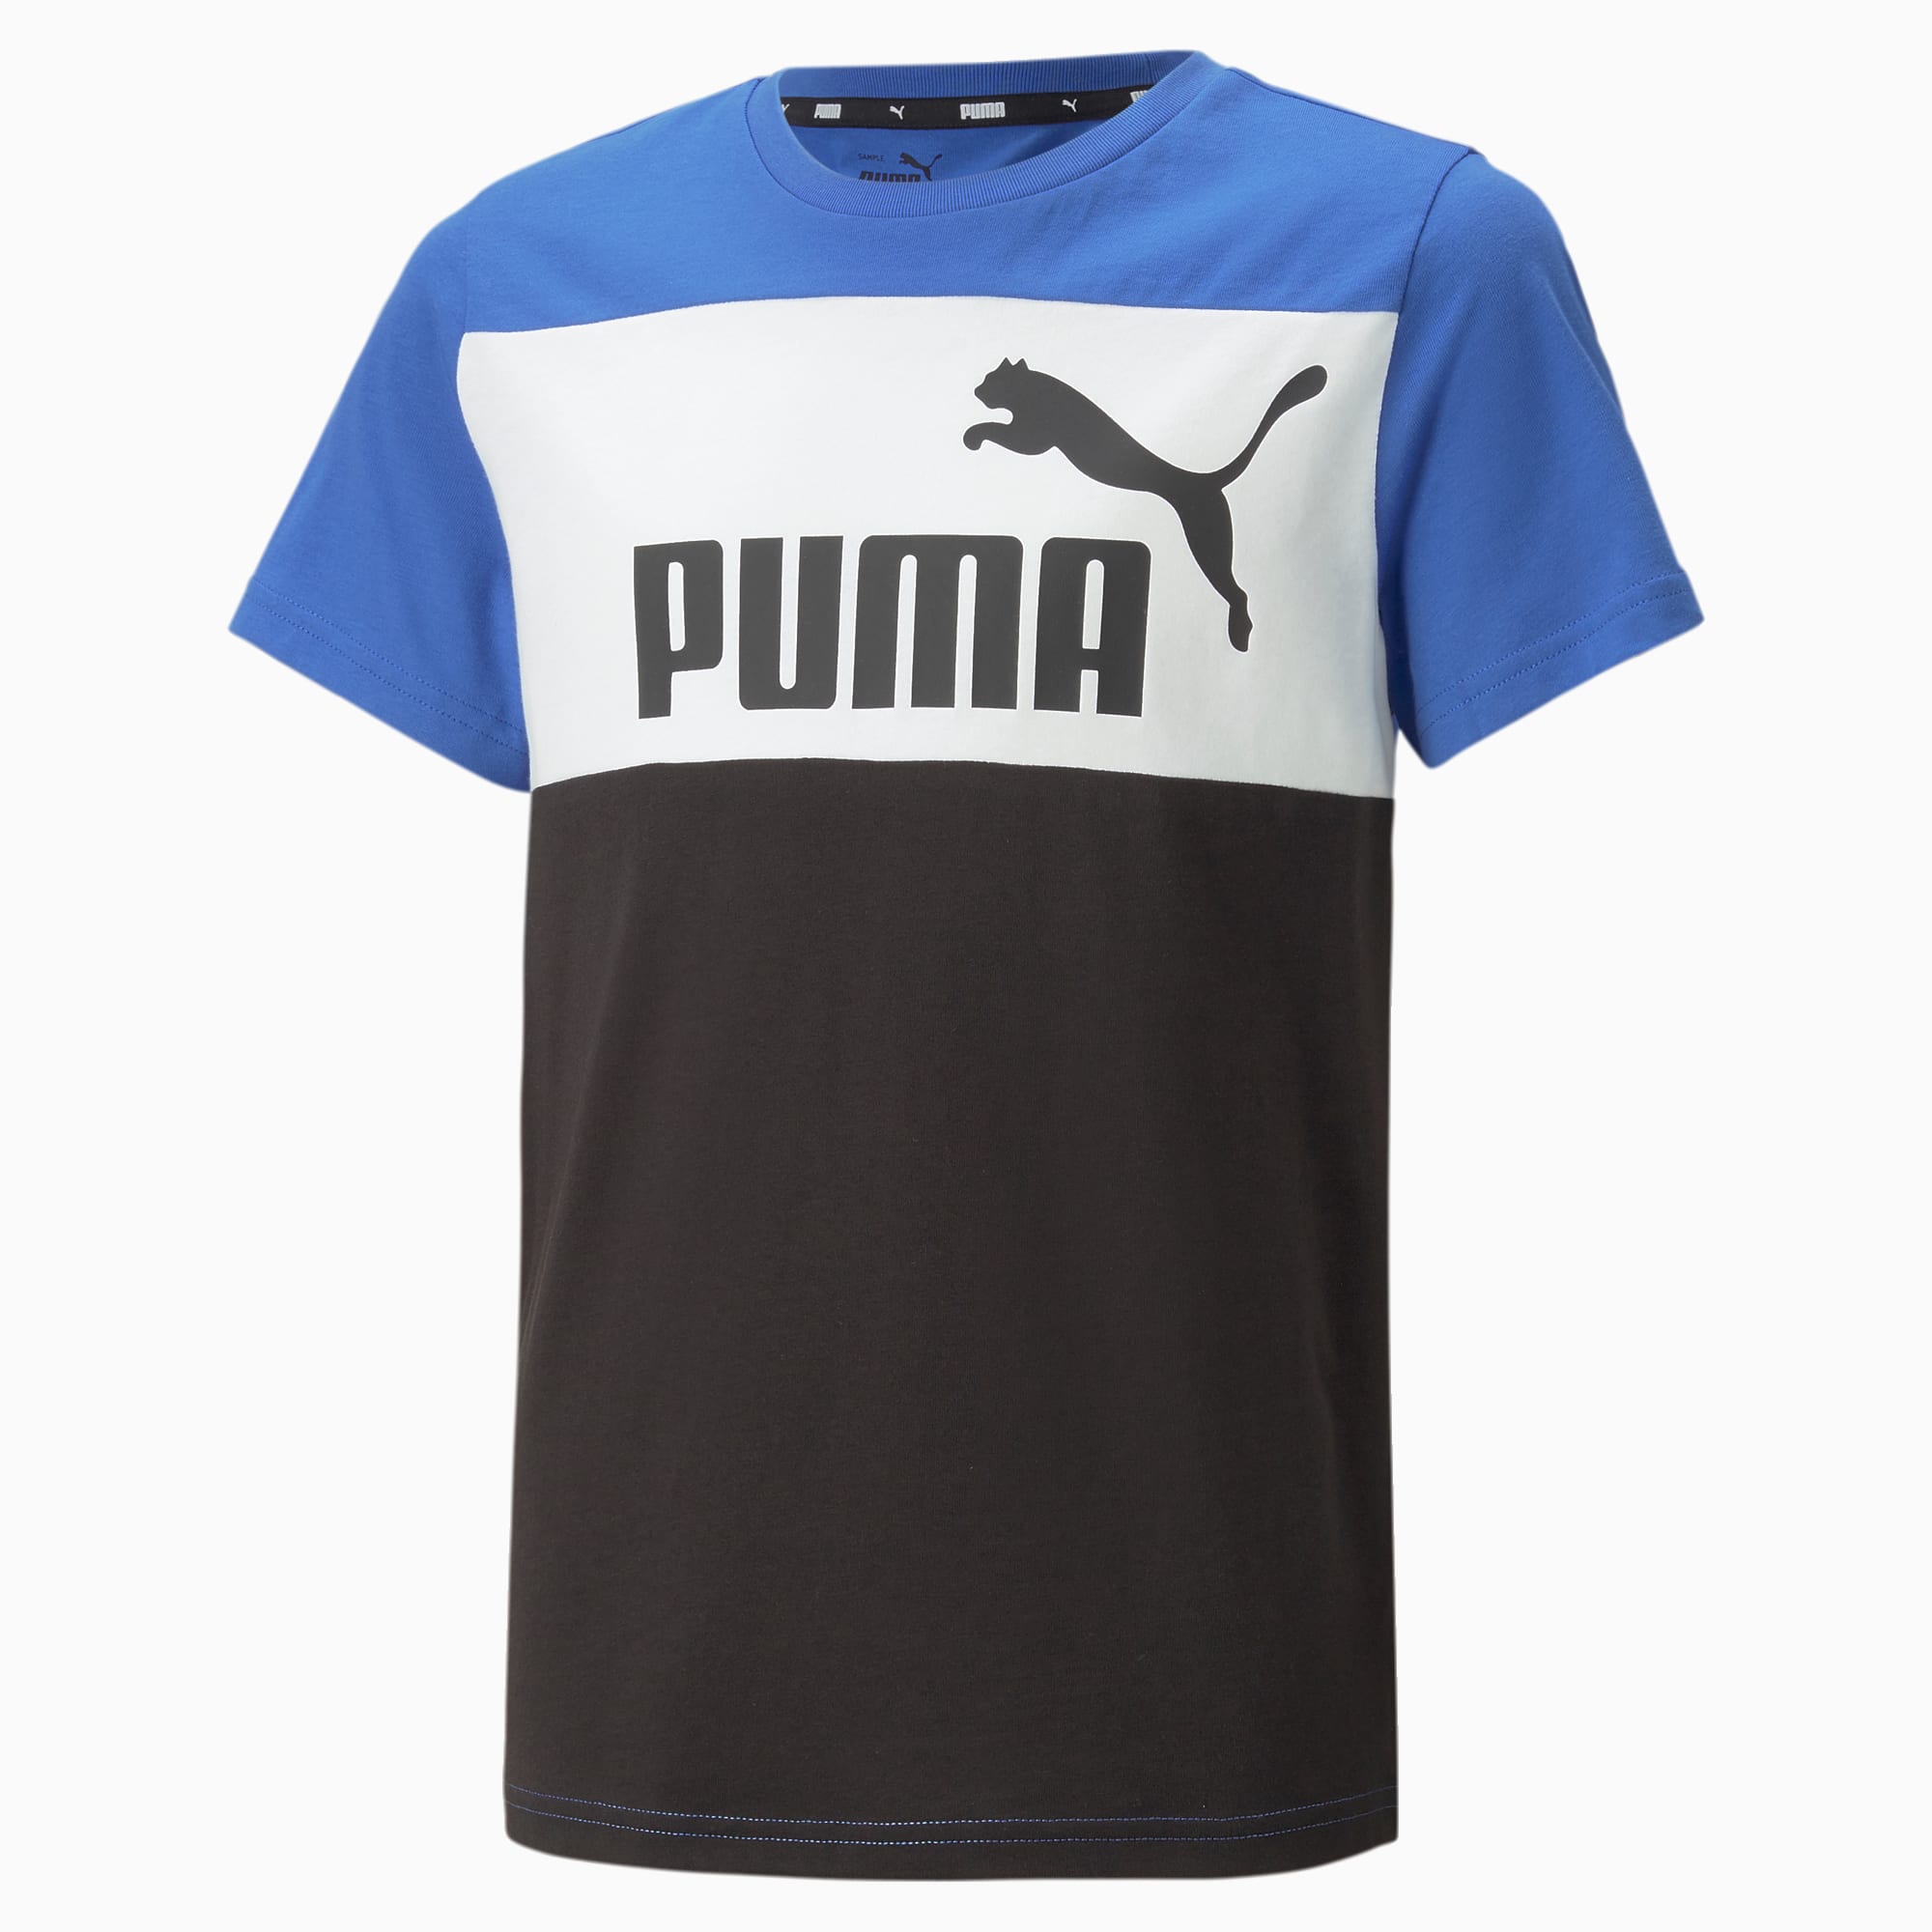 PUMA公式】キッズ ボーイズ ESS+ カラーブロック 半袖 Tシャツ 120-160cm